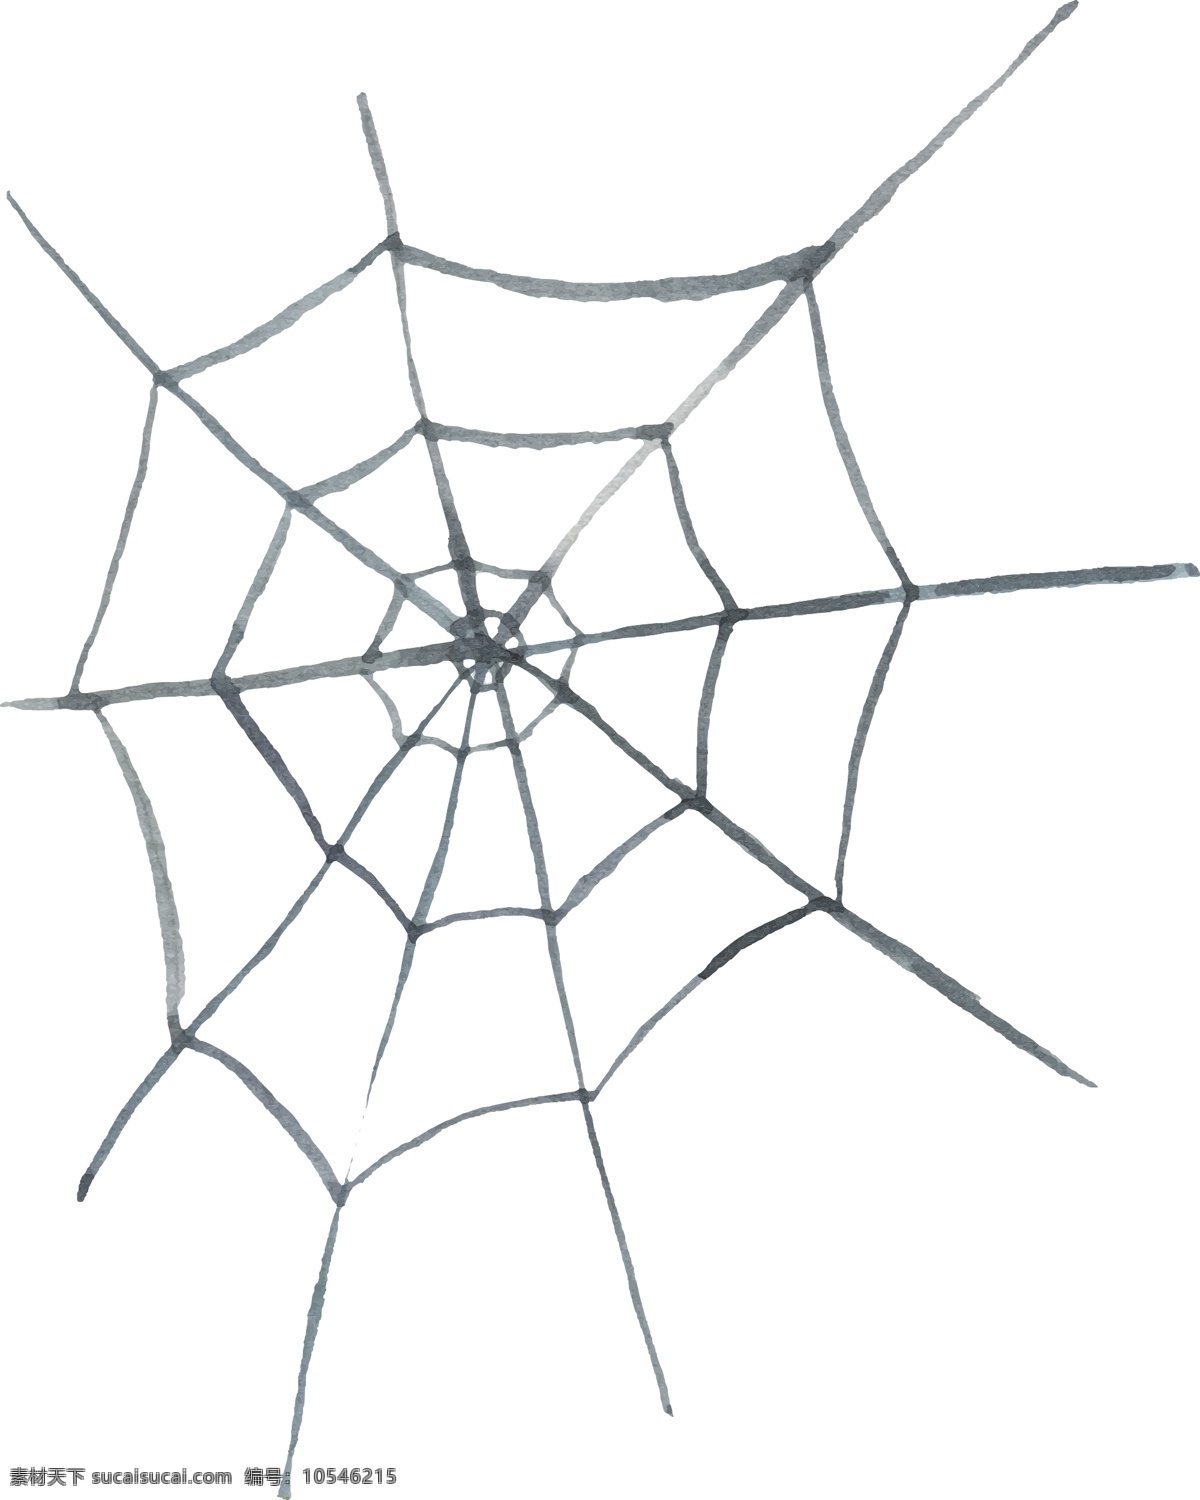 蜘蛛网 矢量 手绘 黑色 矢量素材 设计素材